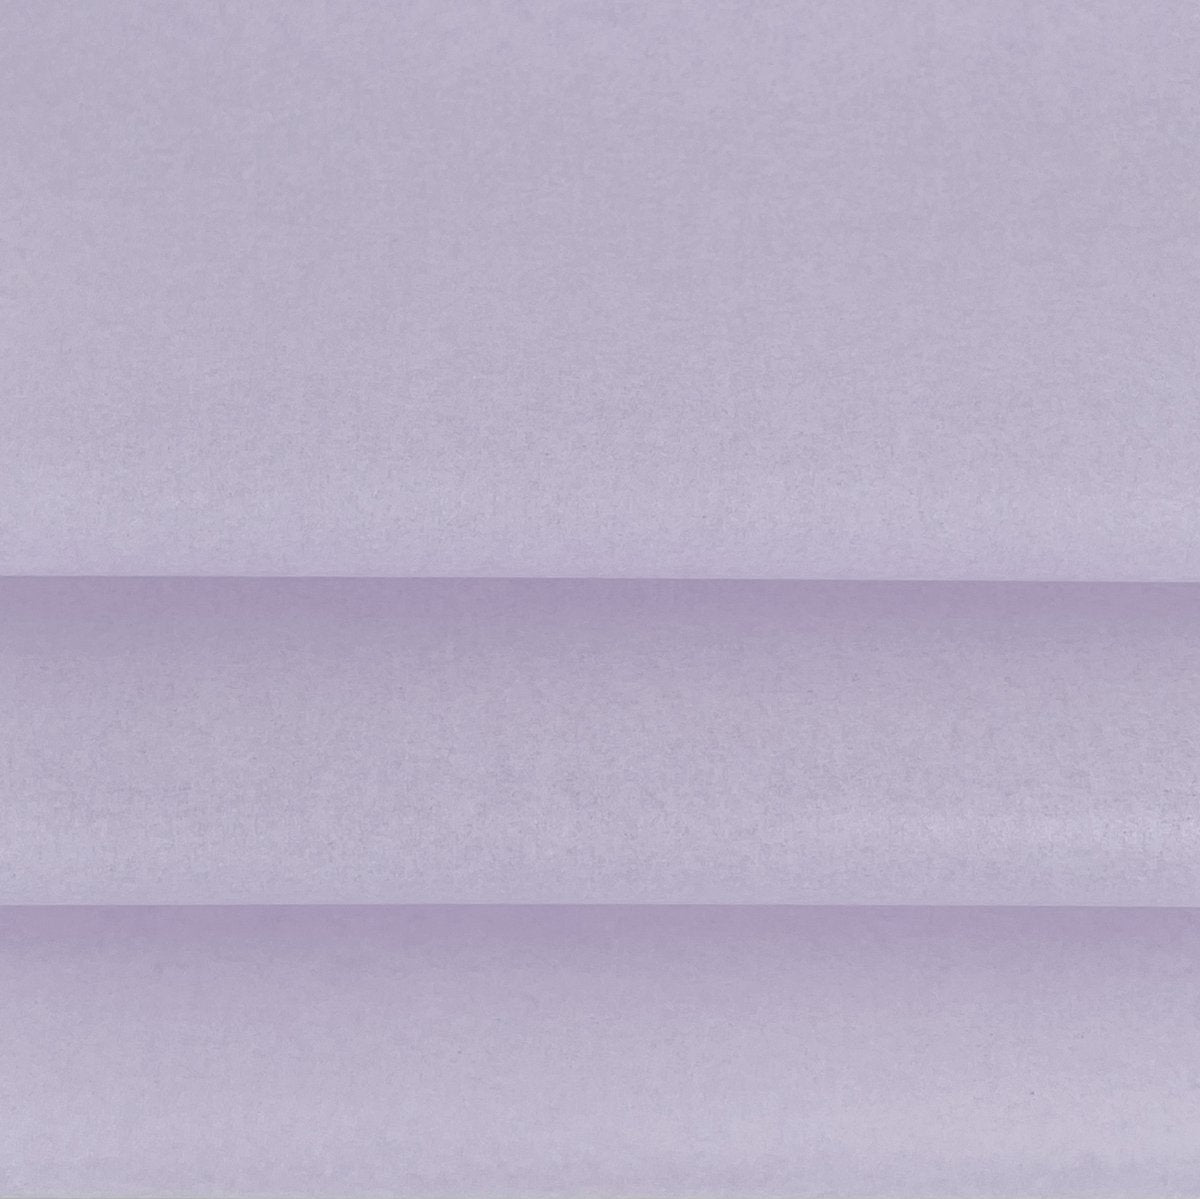 Vloeipapier kleur Paars